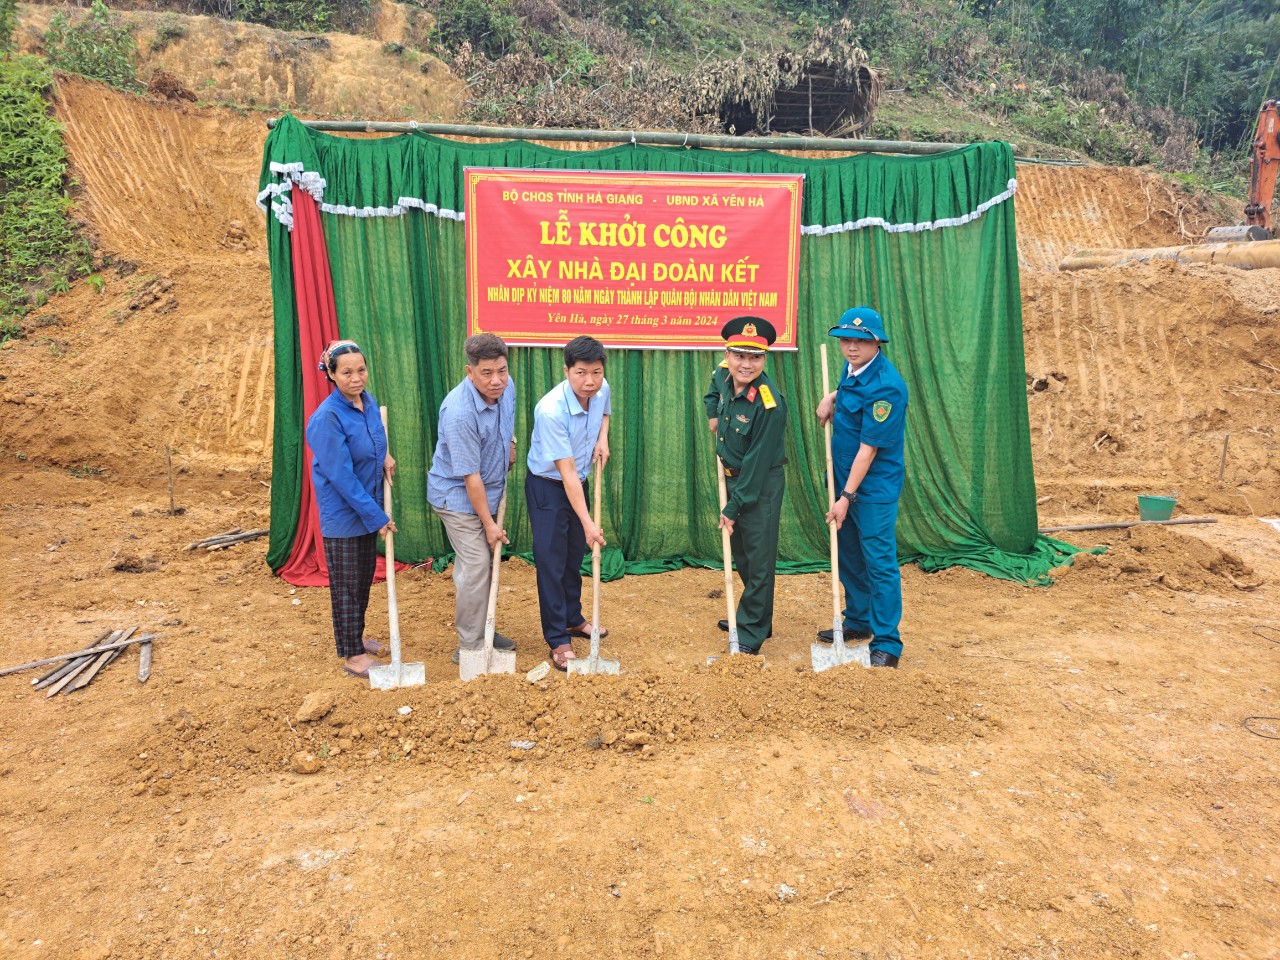 Khởi công xây dựng nhà Đại đoàn kết nhân kỷ niệm 80 năm Ngày thành lập Quân đội Nhân dân Việt Nam